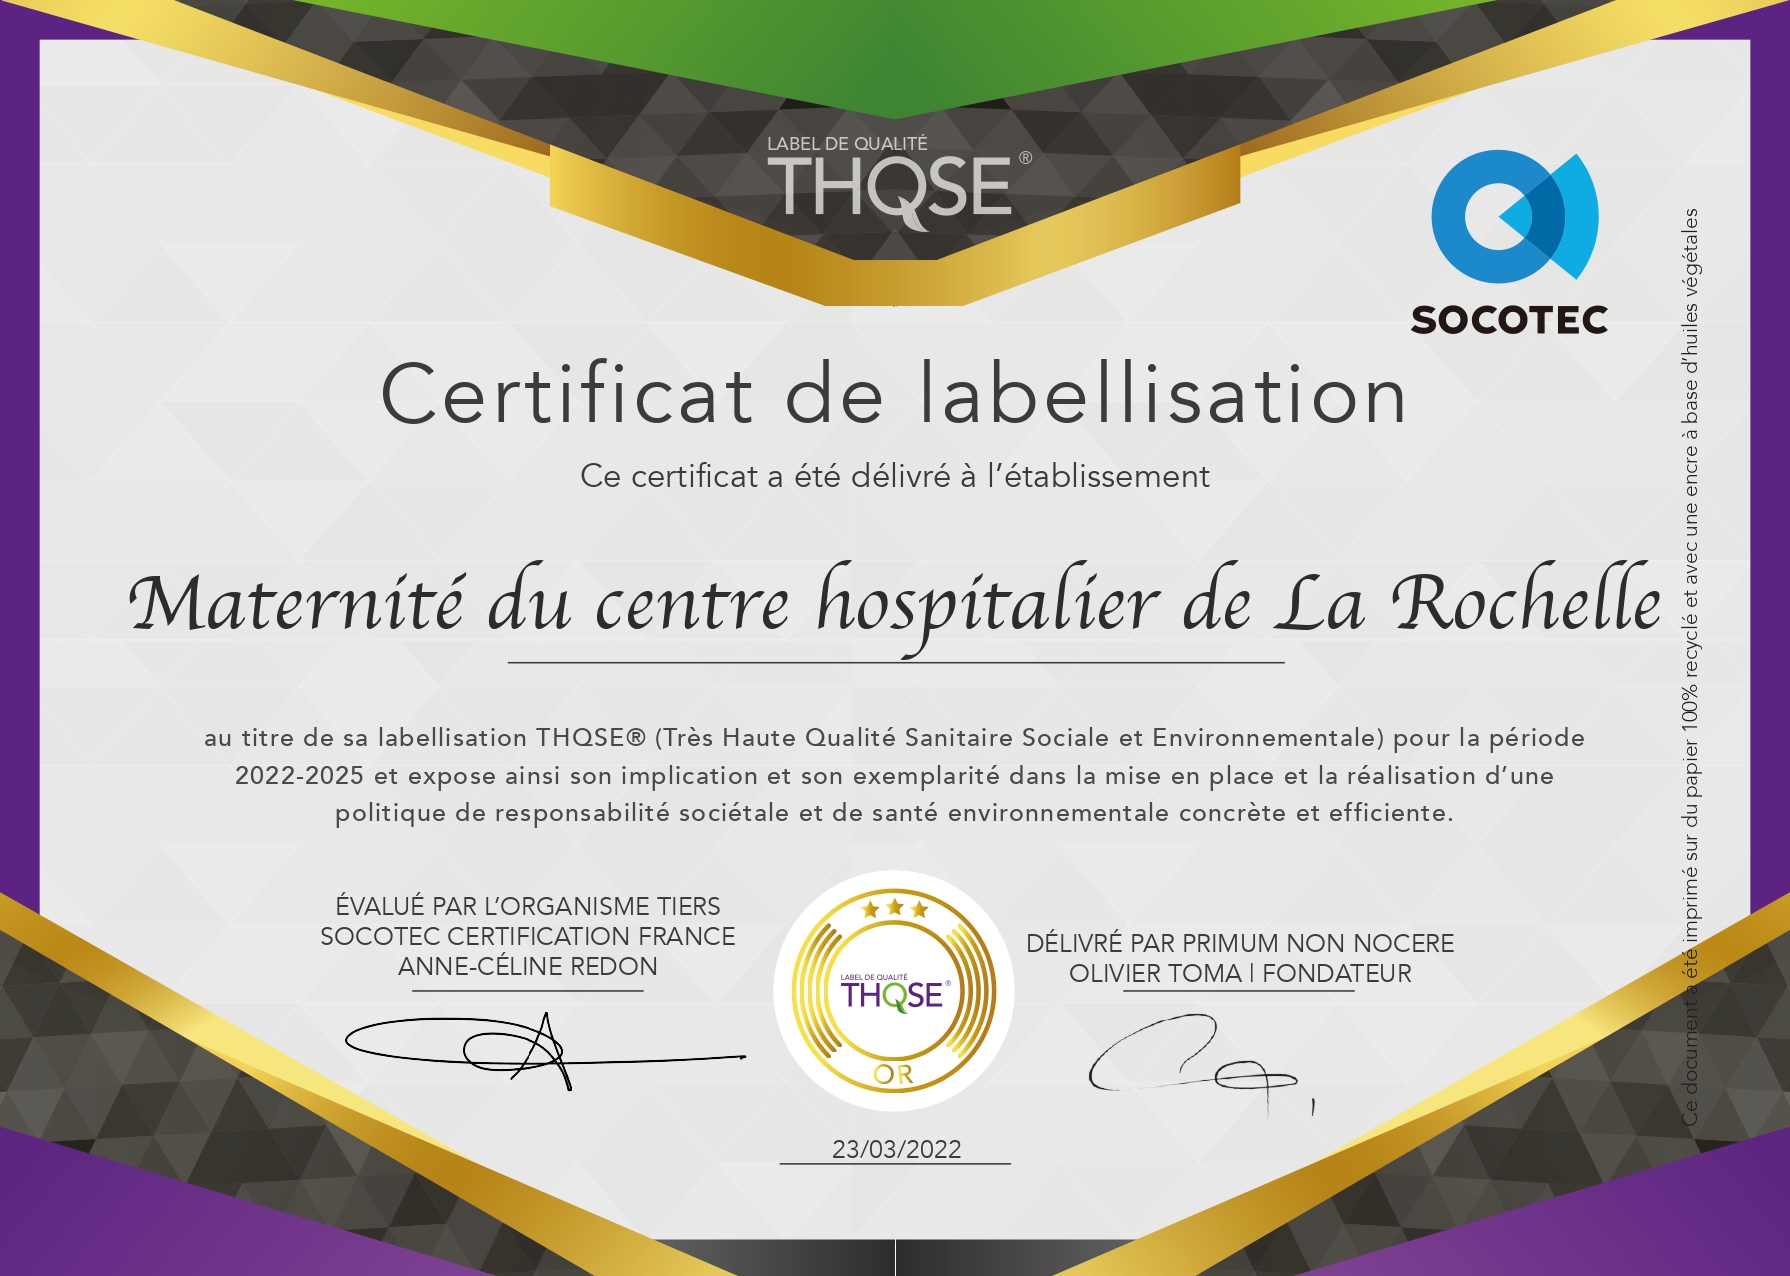 Engagée dans une démarche responsable depuis 2018, la maternité de La Rochelle a obtenu le label THQSE.